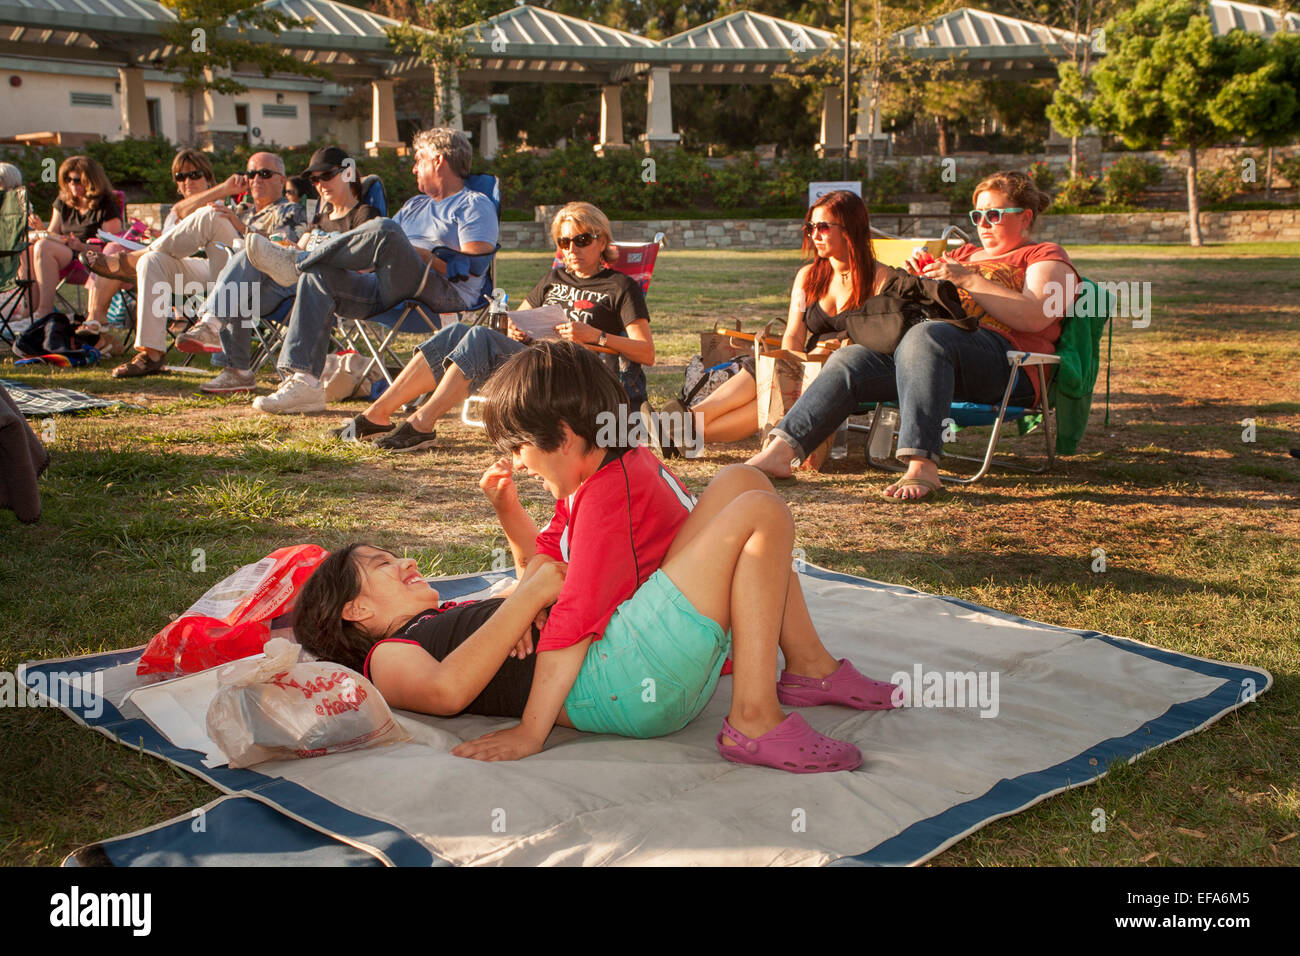 In der am Nachmittag Sonne spielen ein Hispanic Bruder und Schwester auf einer Decke in einem Park in Laguna Hills, CA. Beachten Sie Erwachsene im Hintergrund. Stockfoto